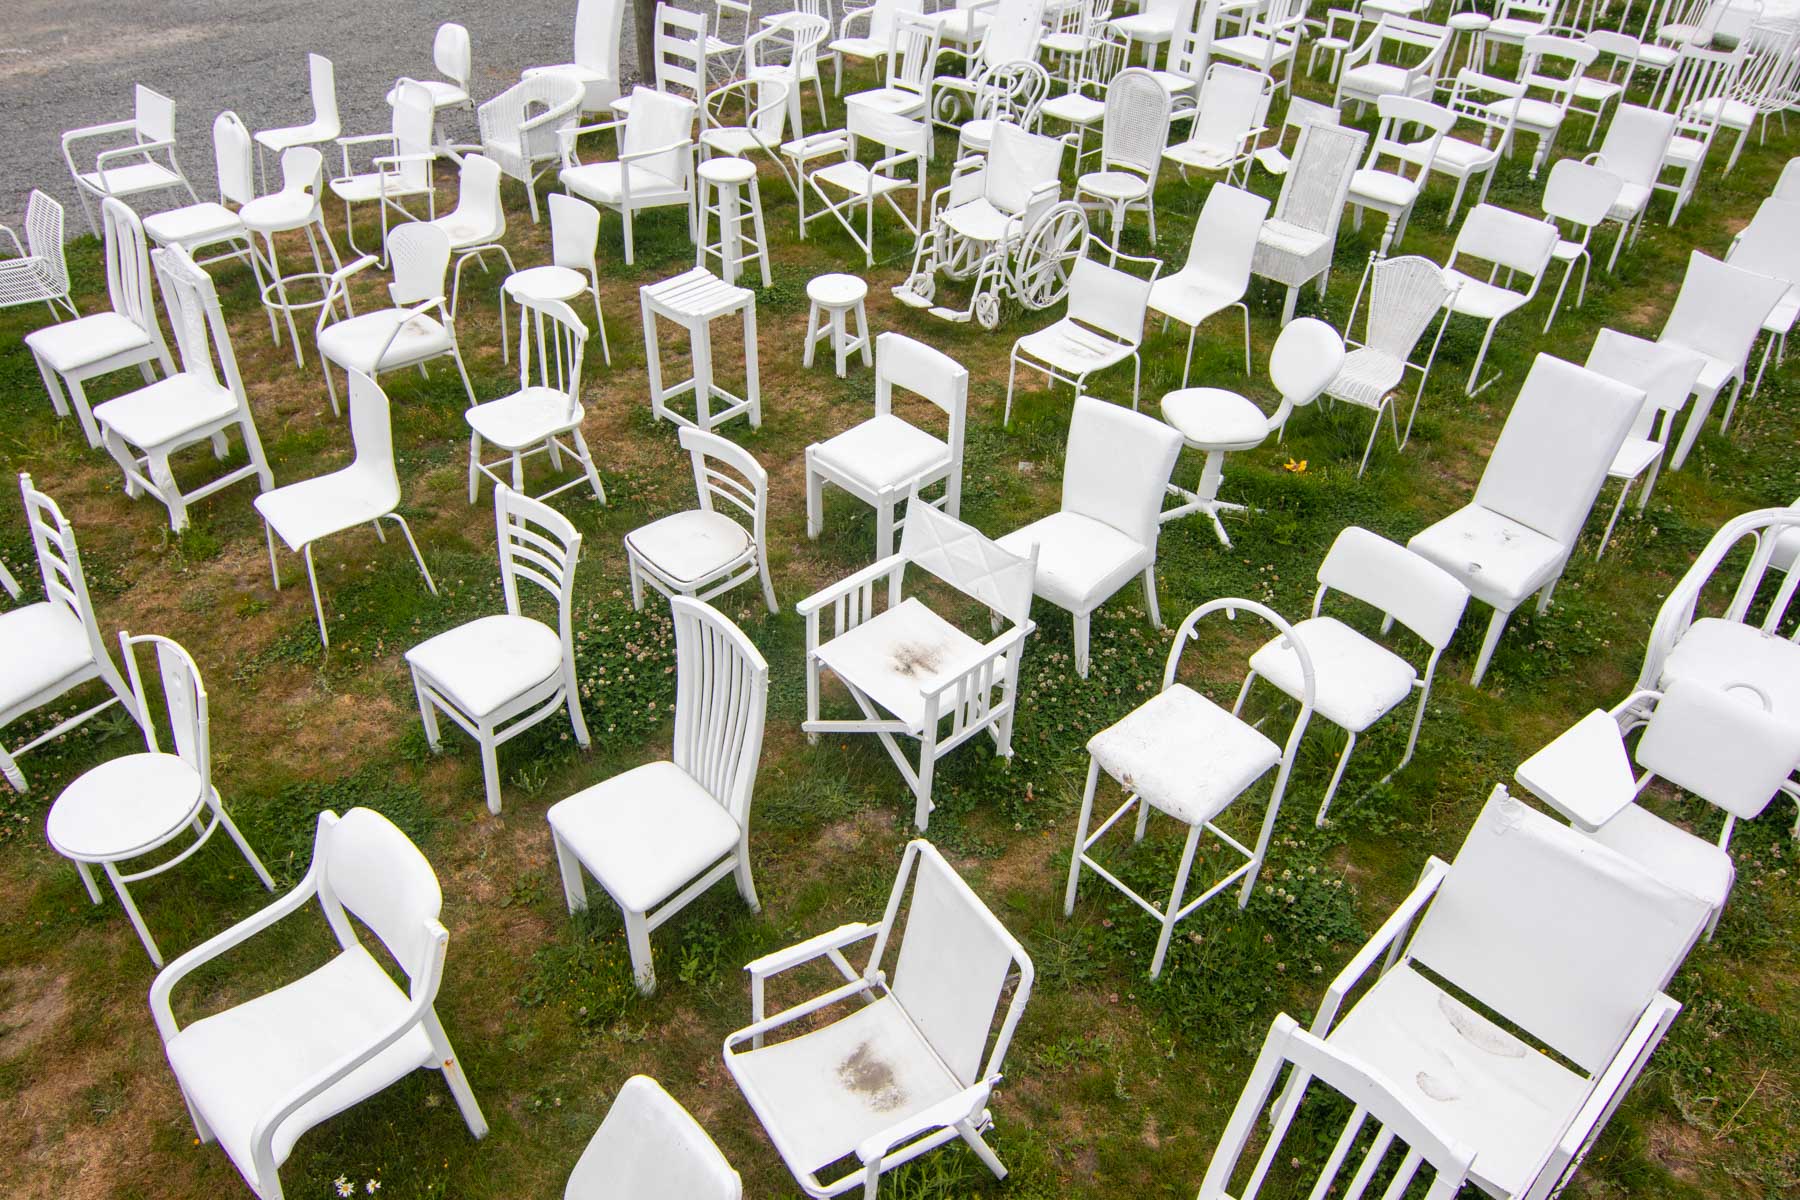 Point de vue en hauteur sur 185 chaises blanches disposées les unes à côté des autres.